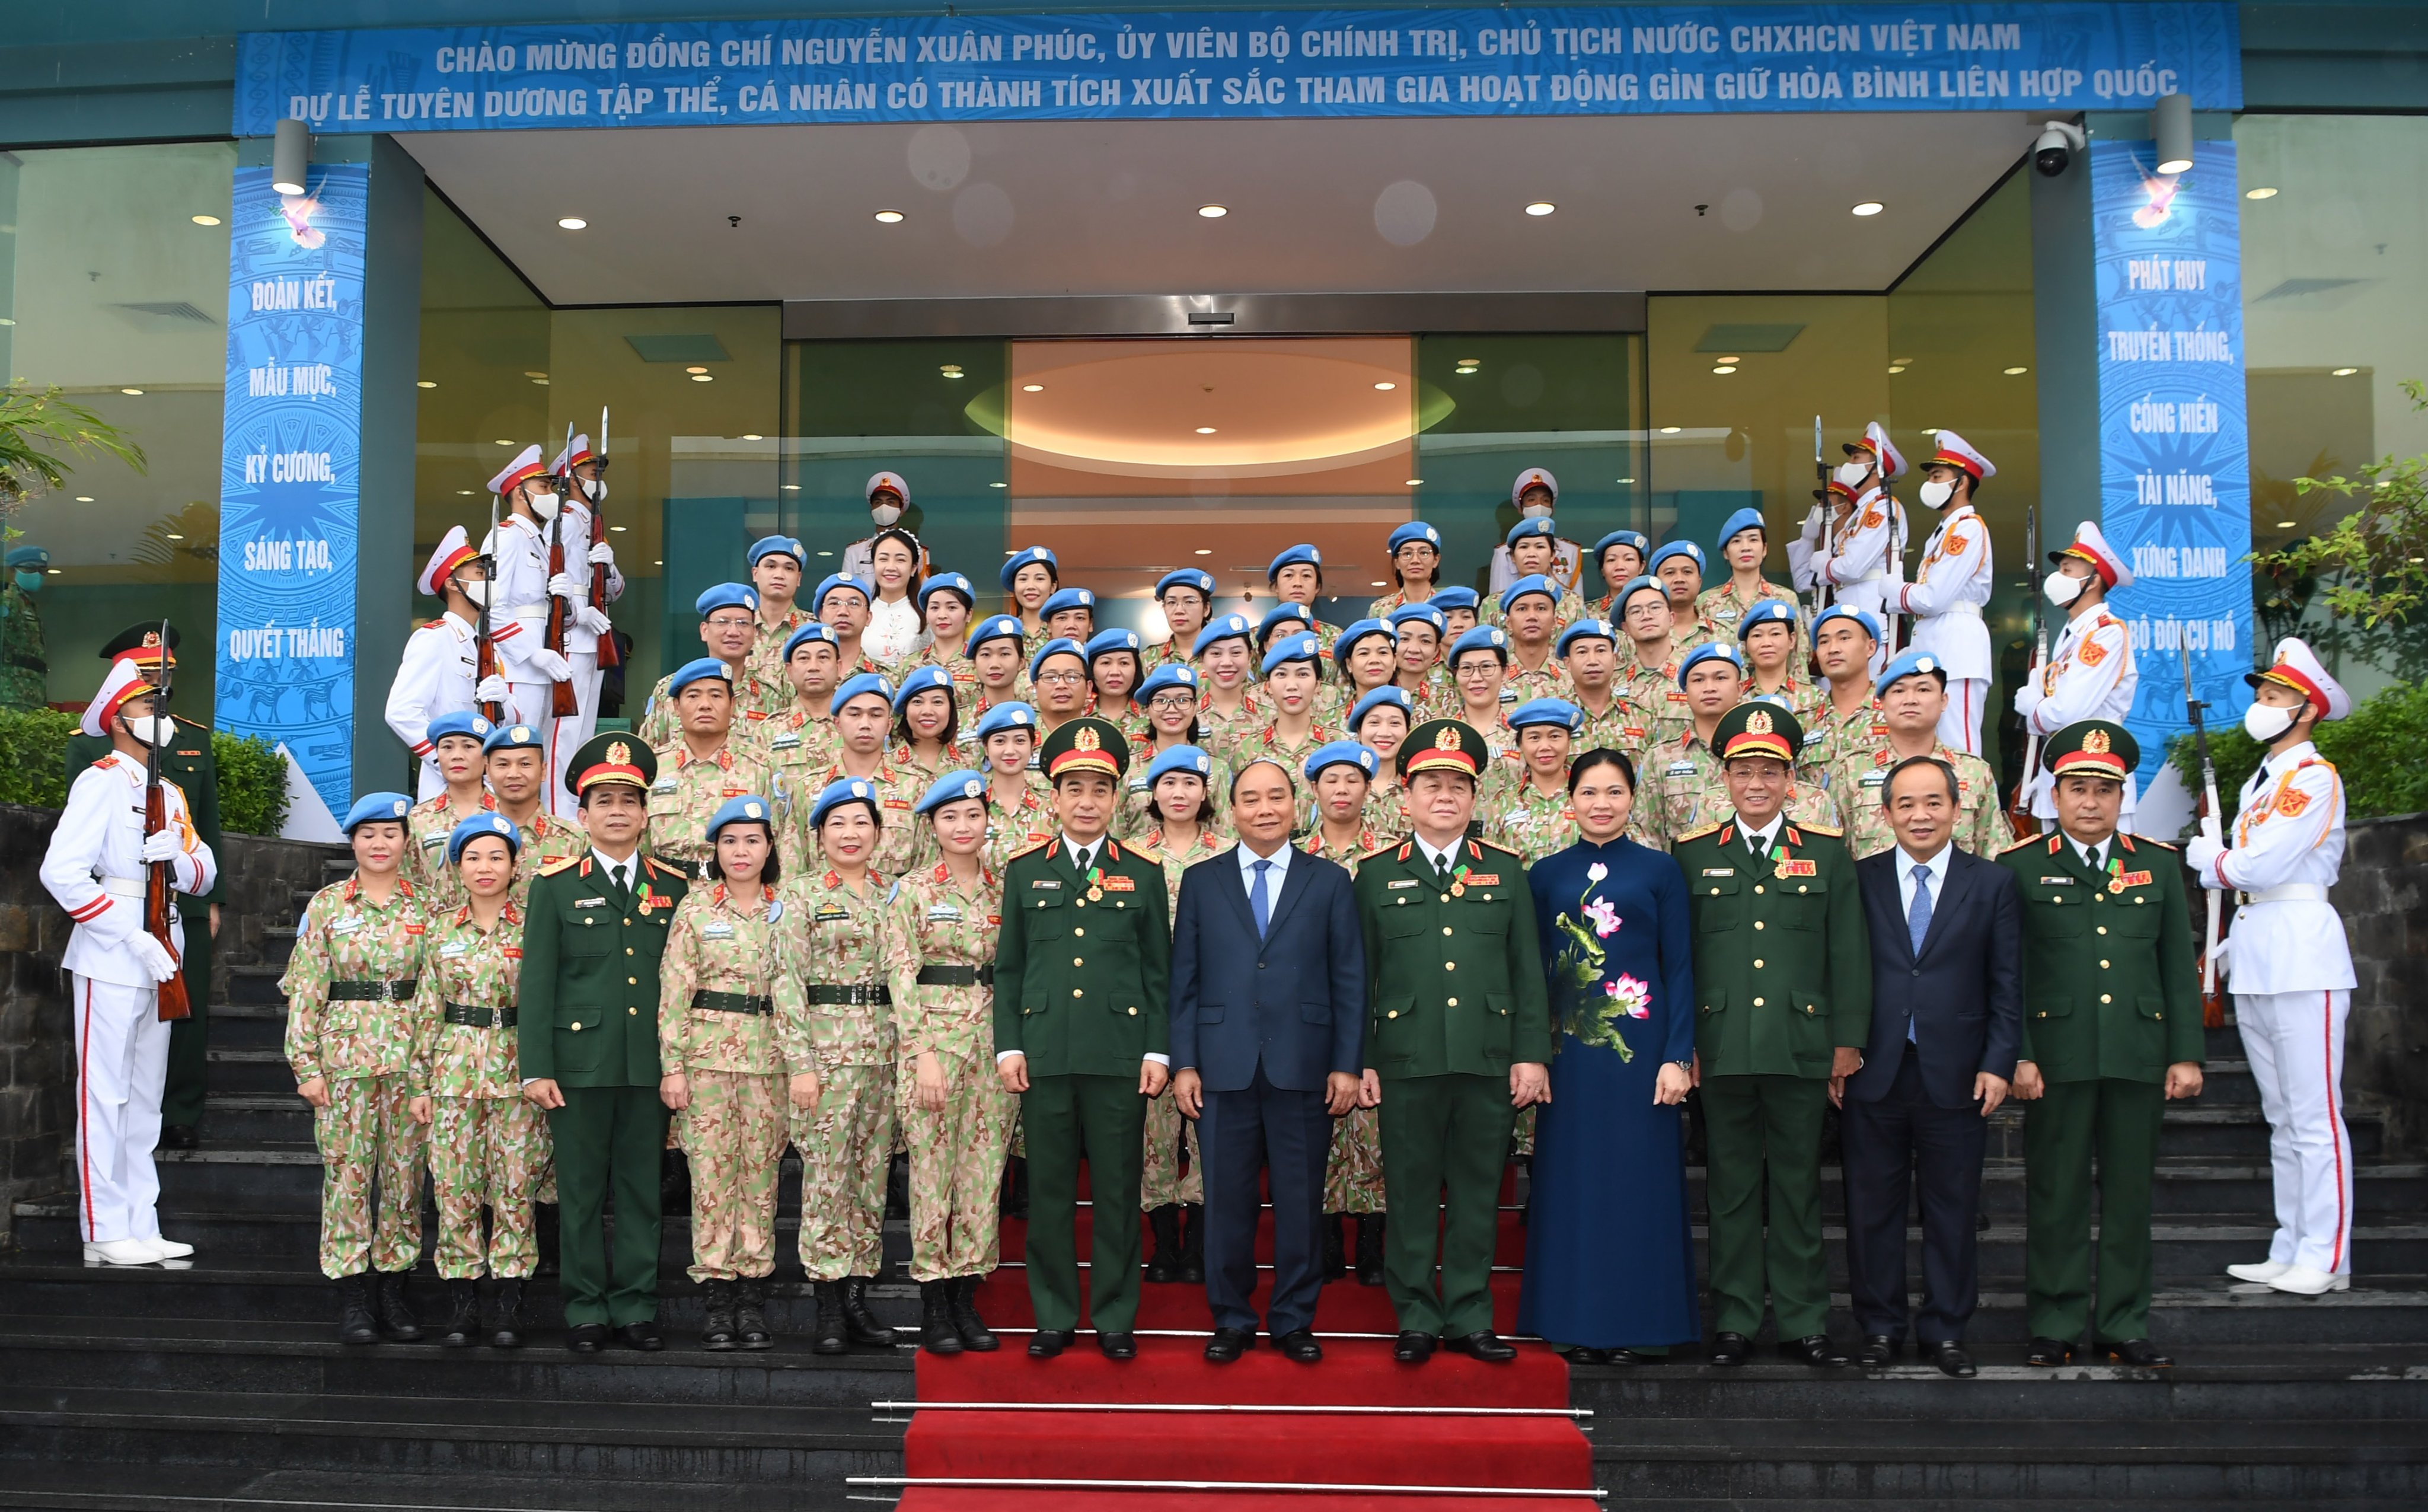 Chủ tịch nước Nguyễn Xuân Phúc, Đại tướng Phan Văn Giang chụp ảnh lưu niệm tại Lễ tuyên dương lực lượng gìn giữ hòa bình Liên hợp quốc.